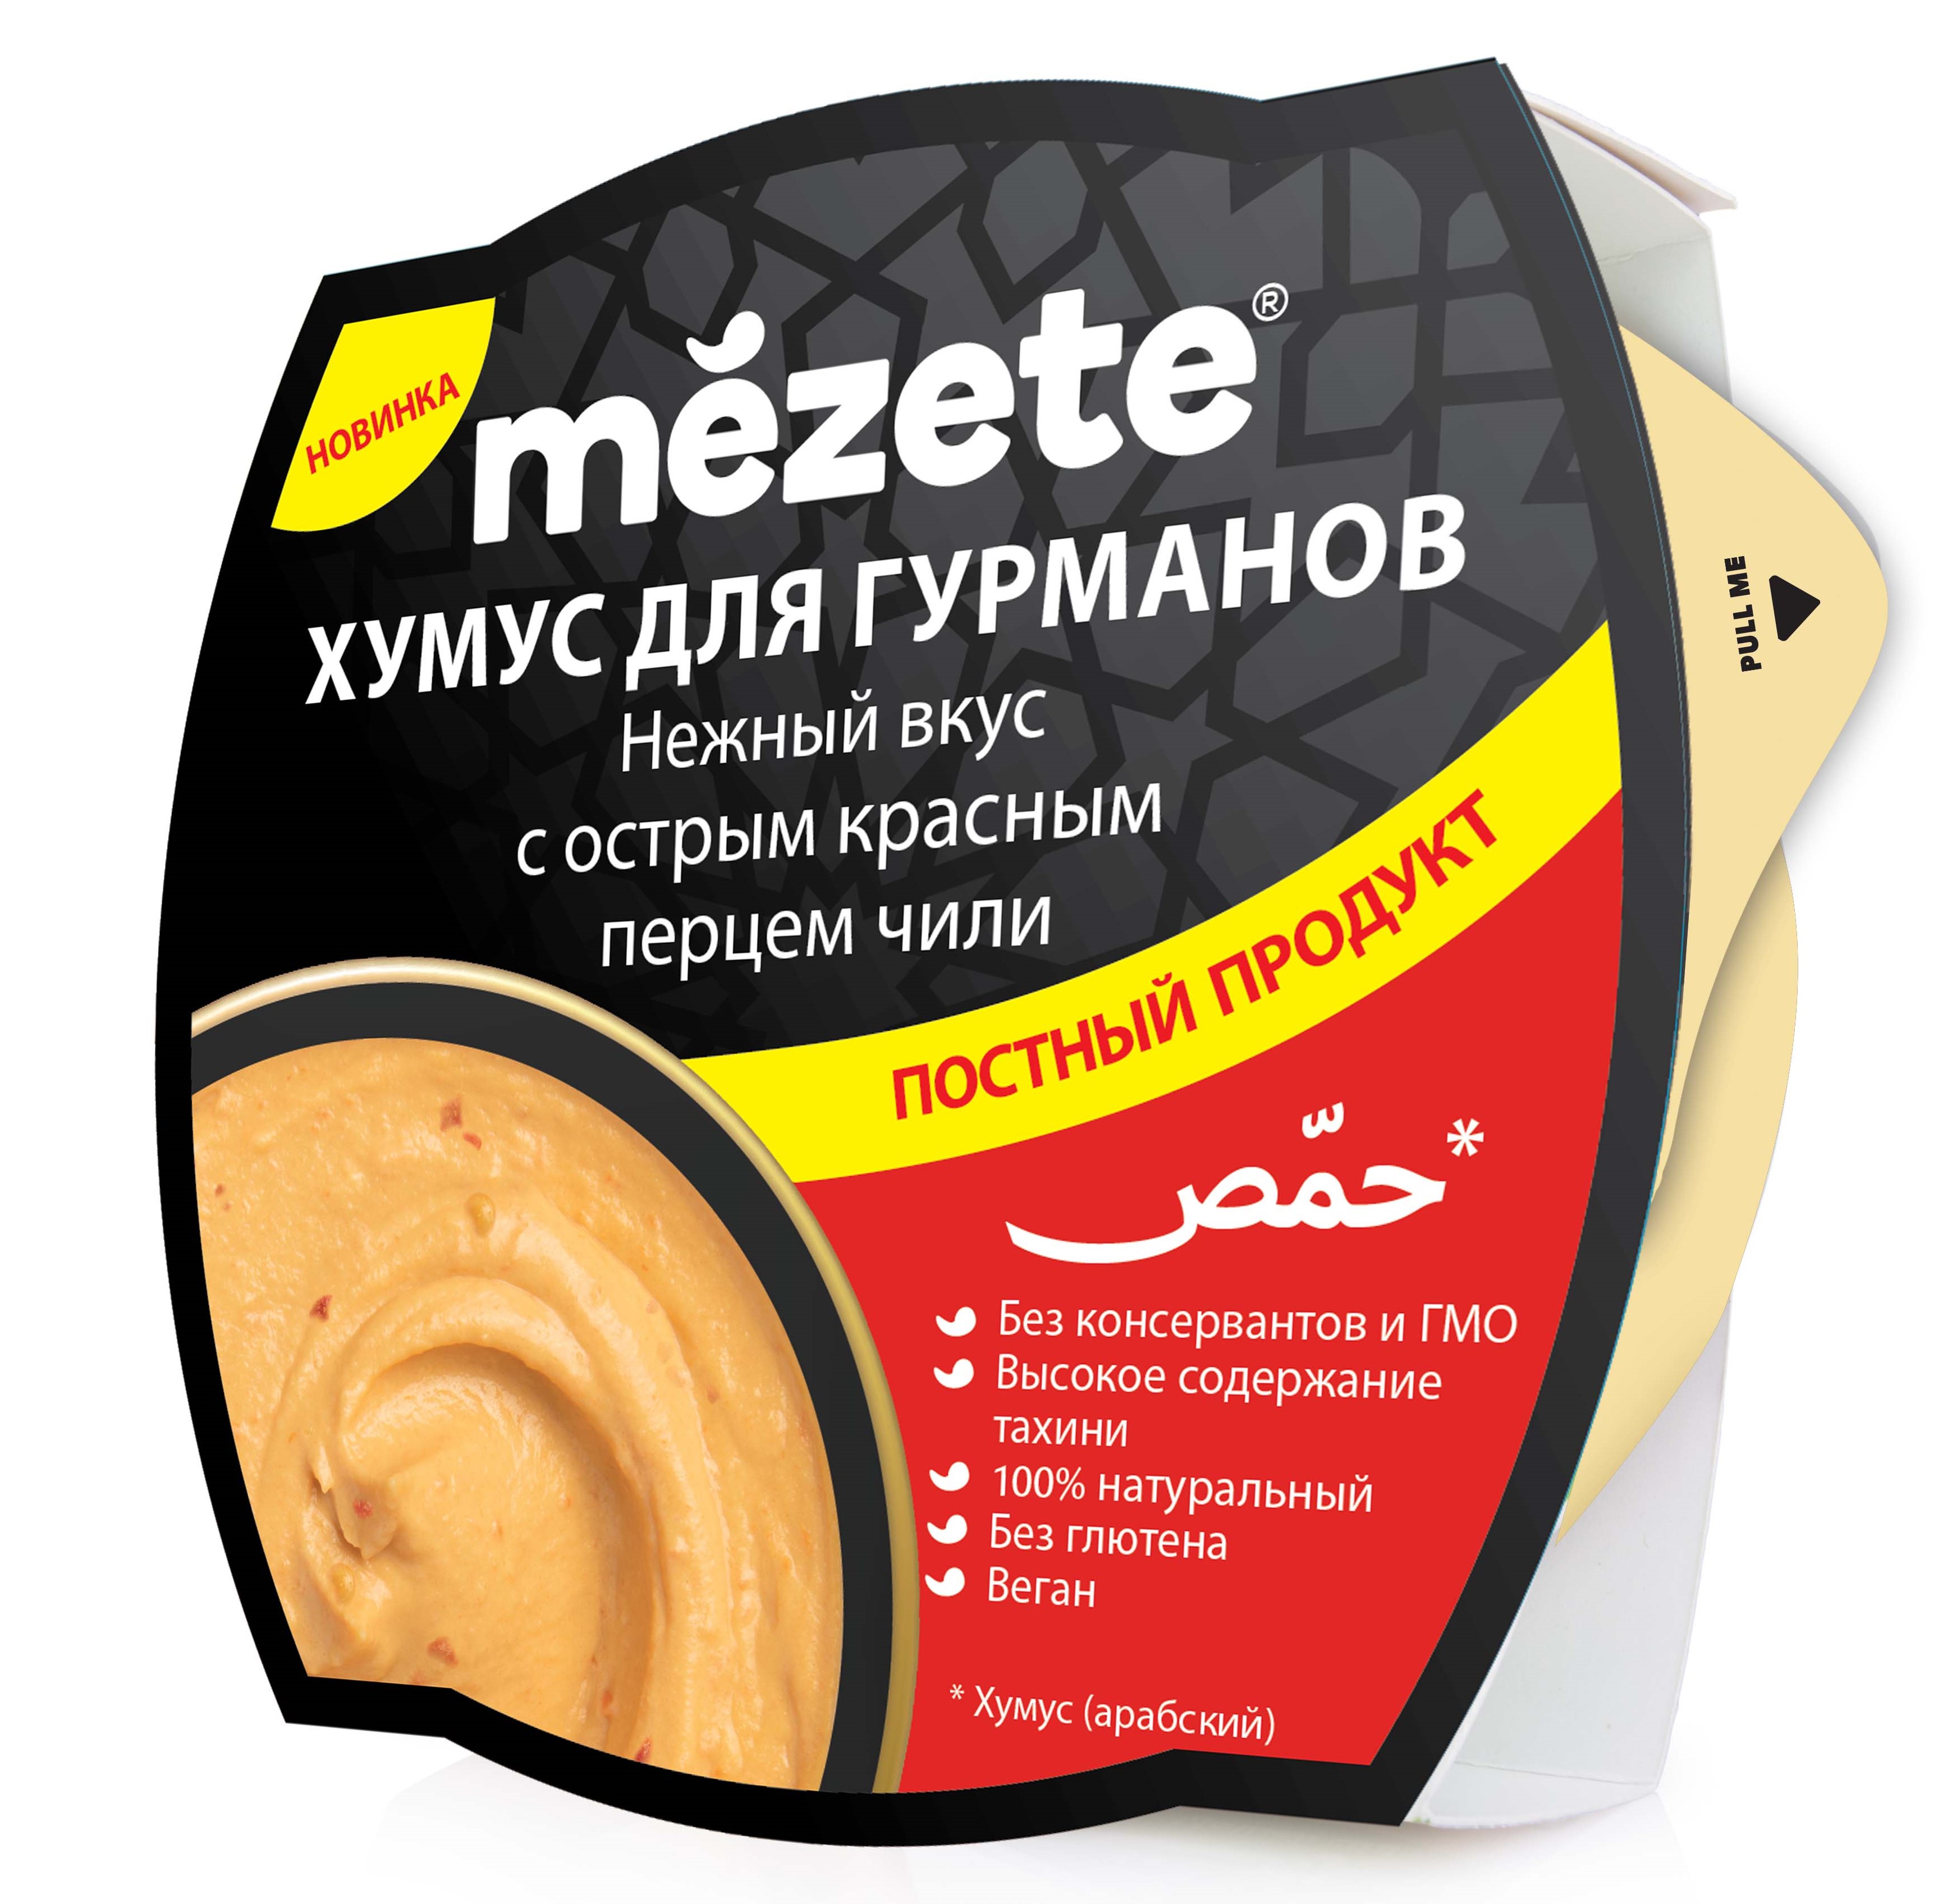 Хумус Mezete с острым красным перцем Чили 215г